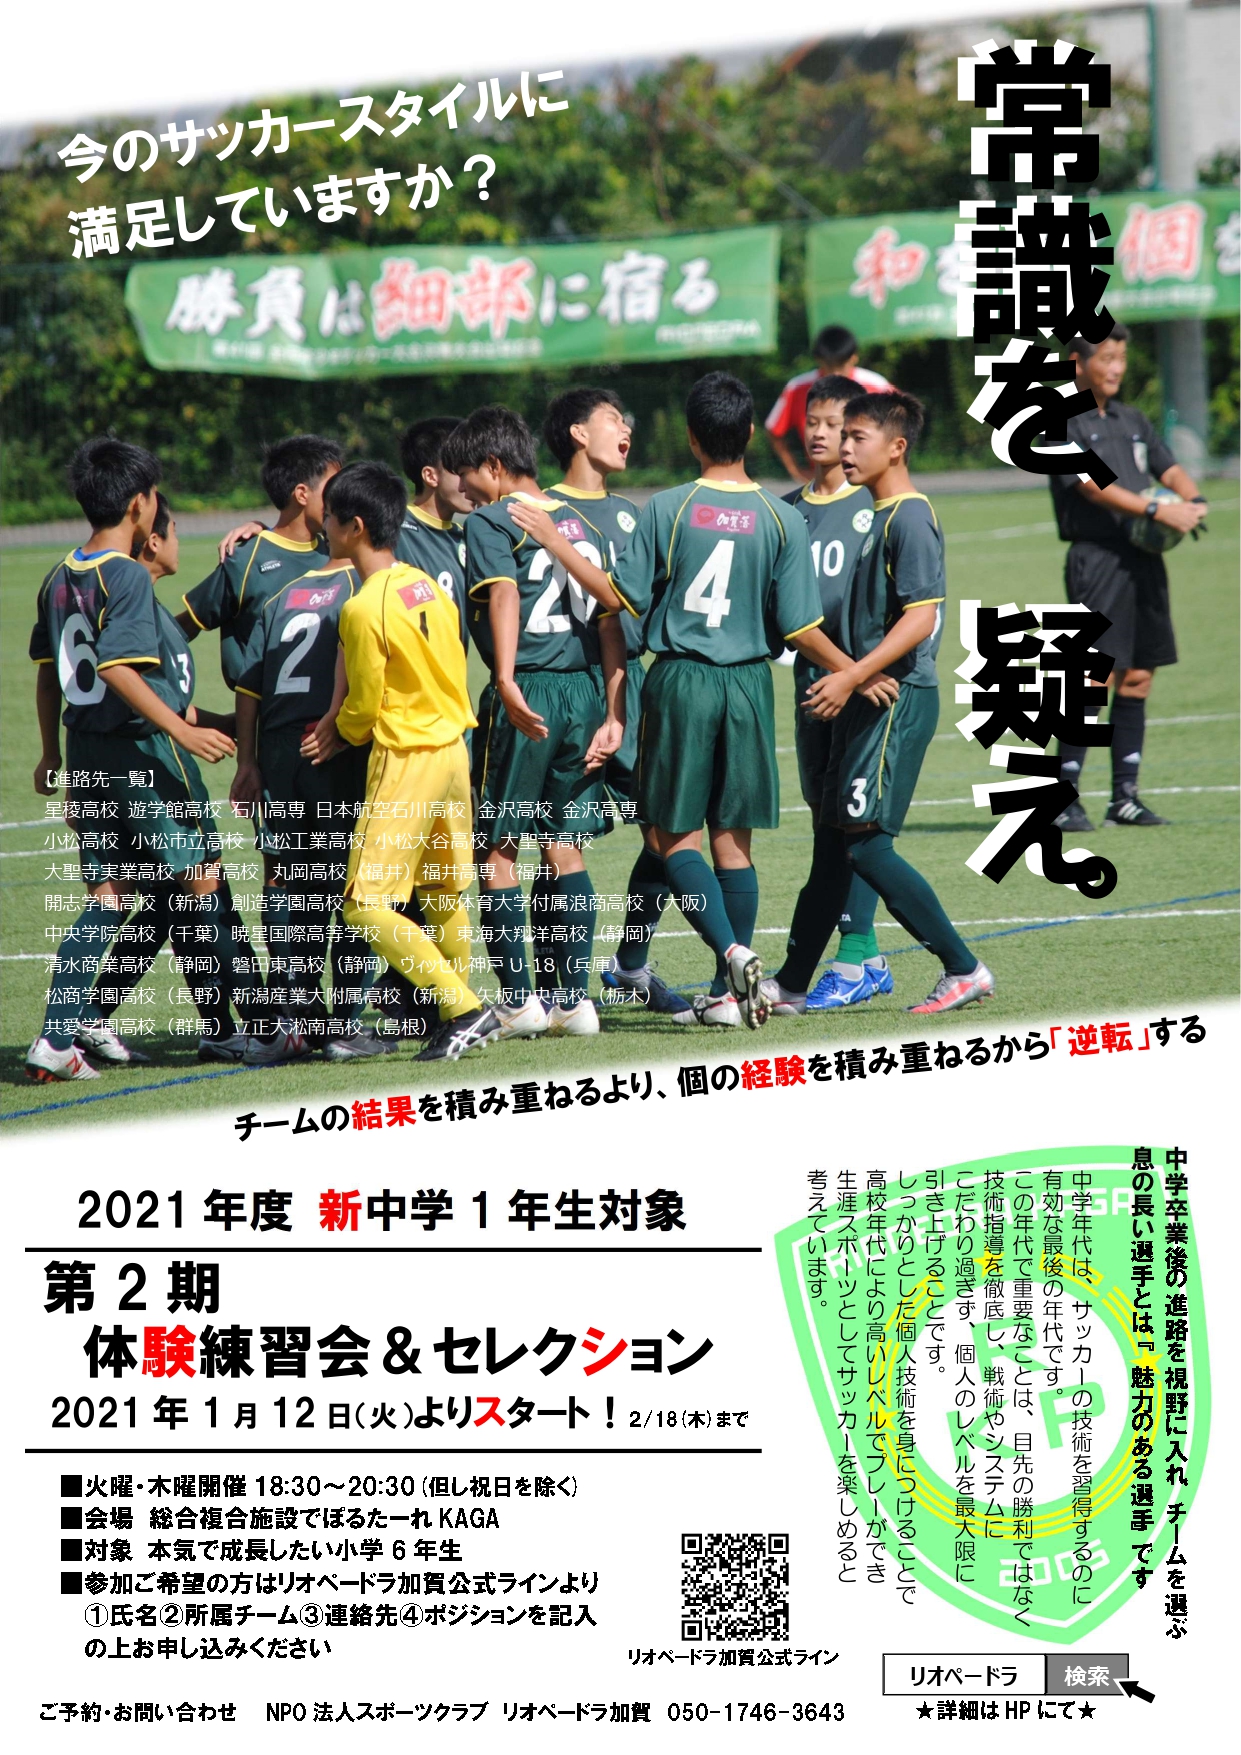 石川県のサッカー 体育 体操 ならスポーツクラブリオペードラ加賀